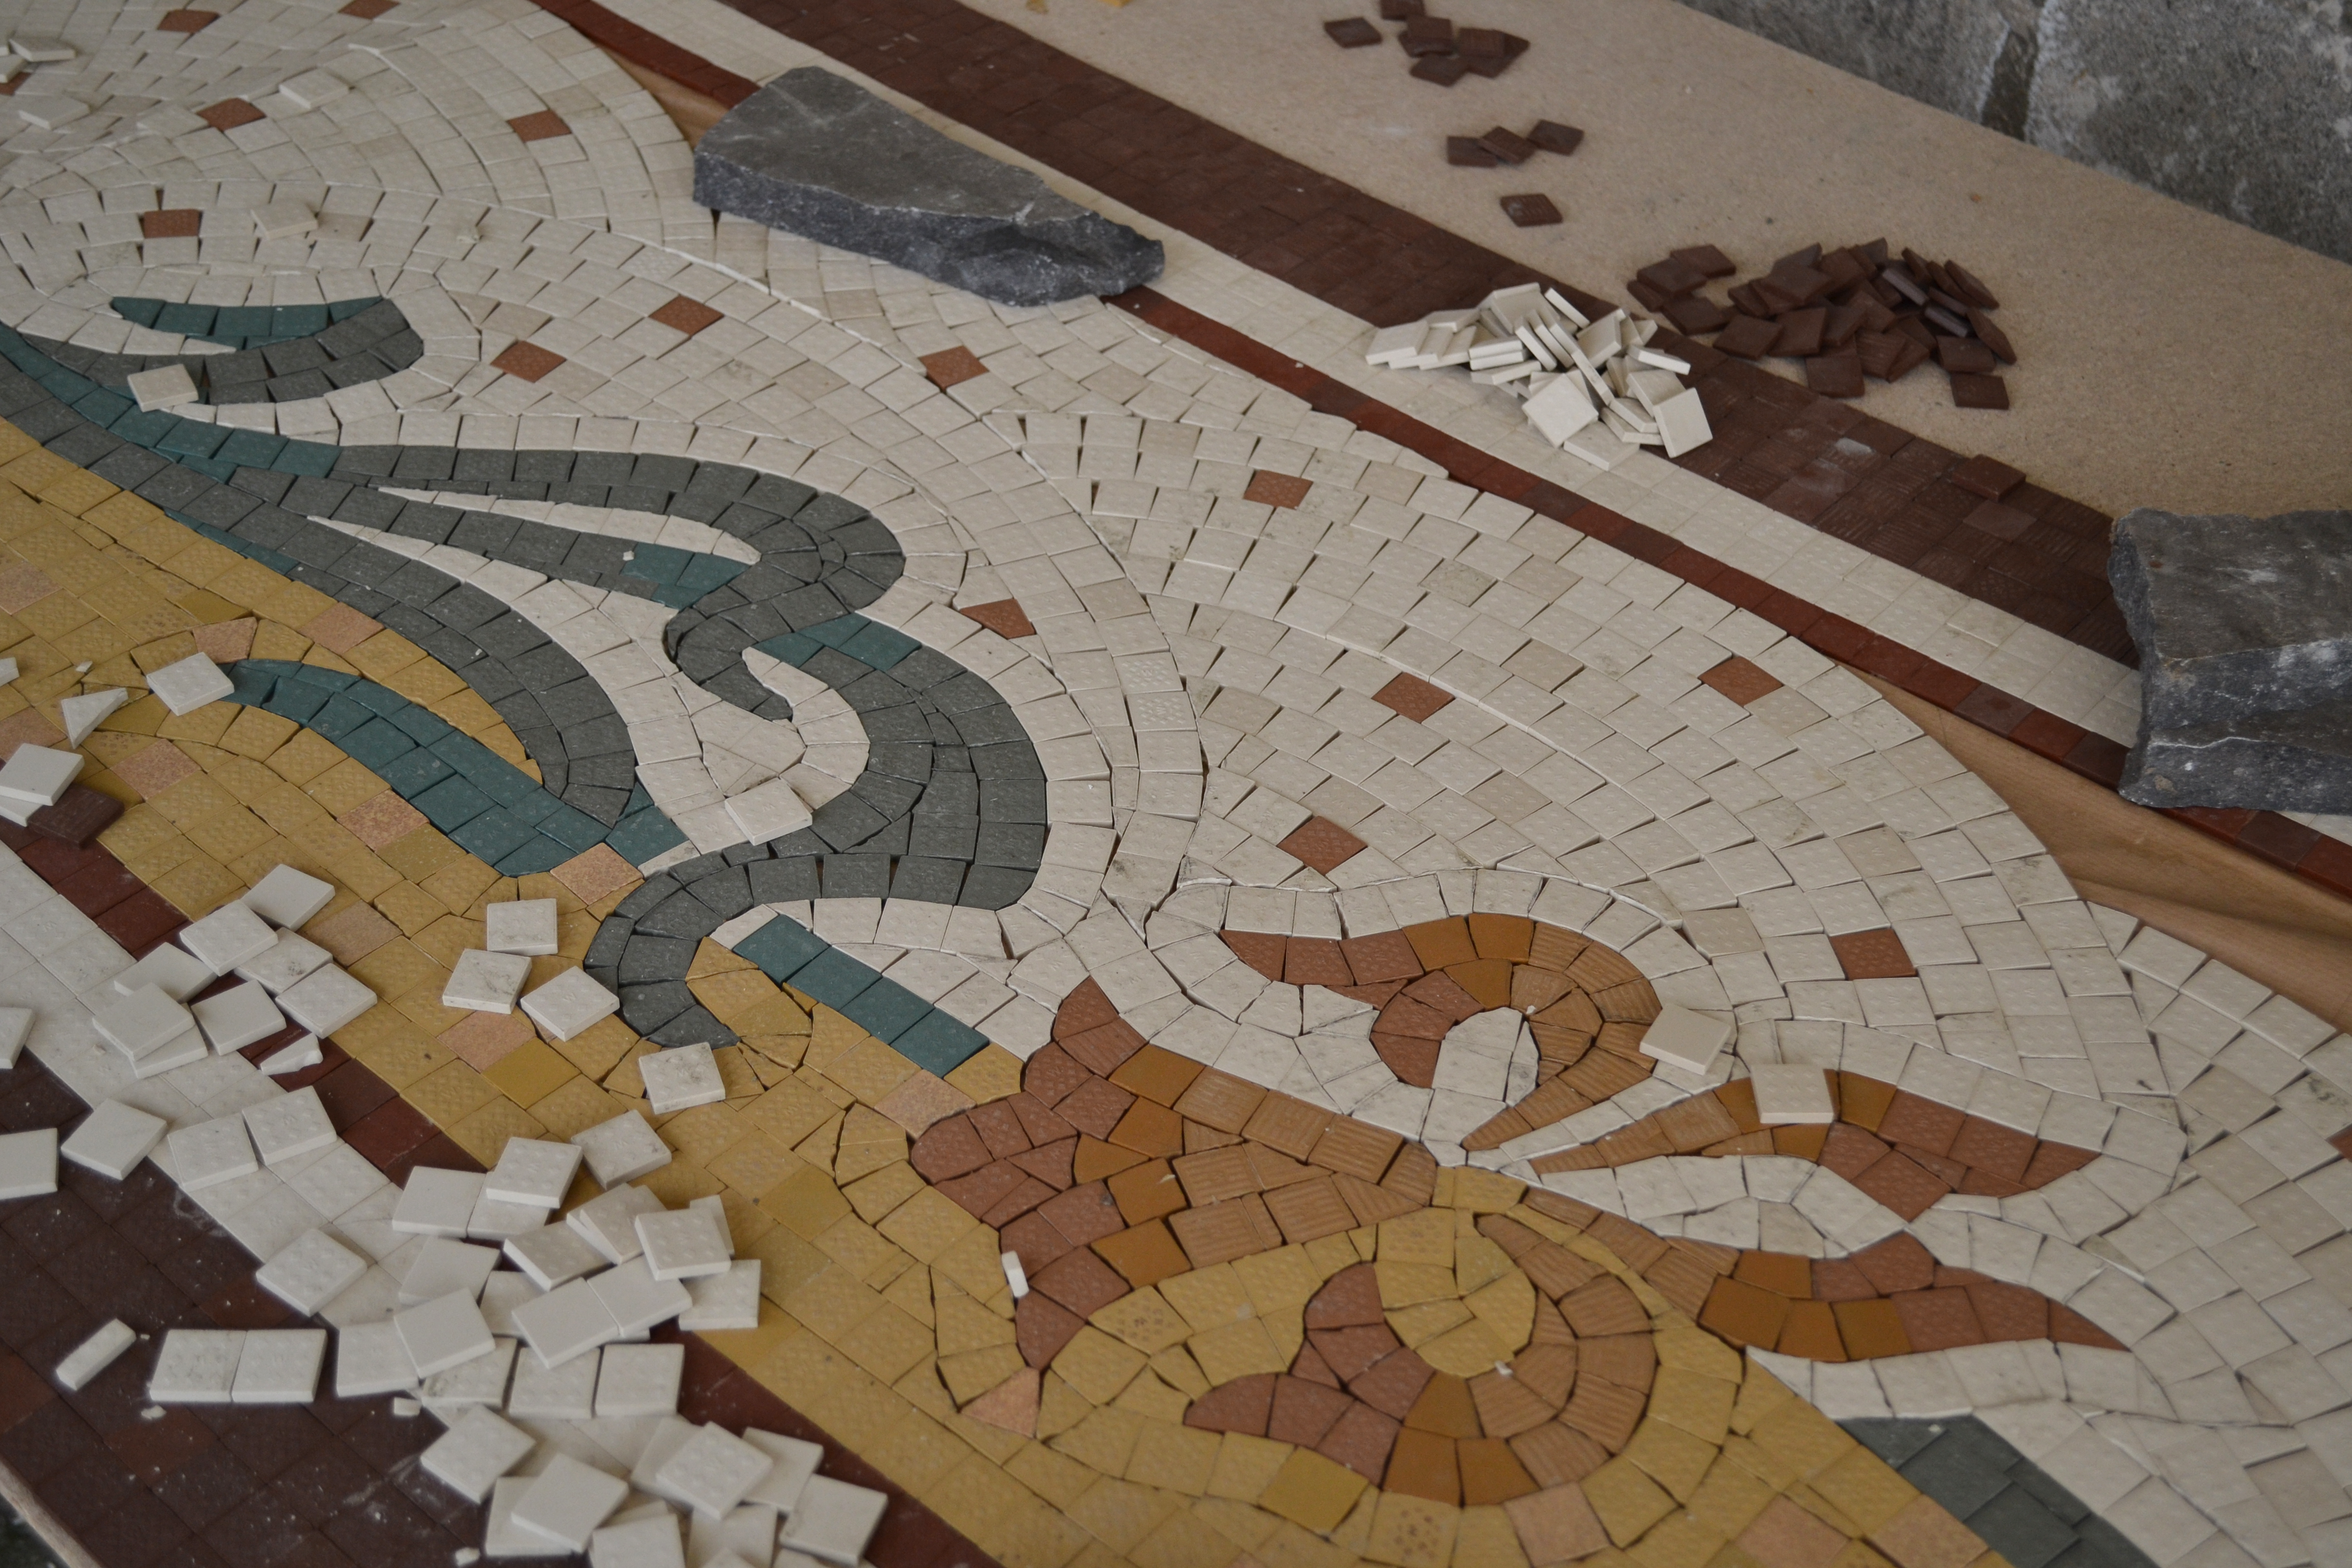 Restauration de sol en mosaïque de type Art Nouveau Fabrication des anciens motifs à l'identique grès cérames industriels
Quartier Bourse de Commerce, Paris